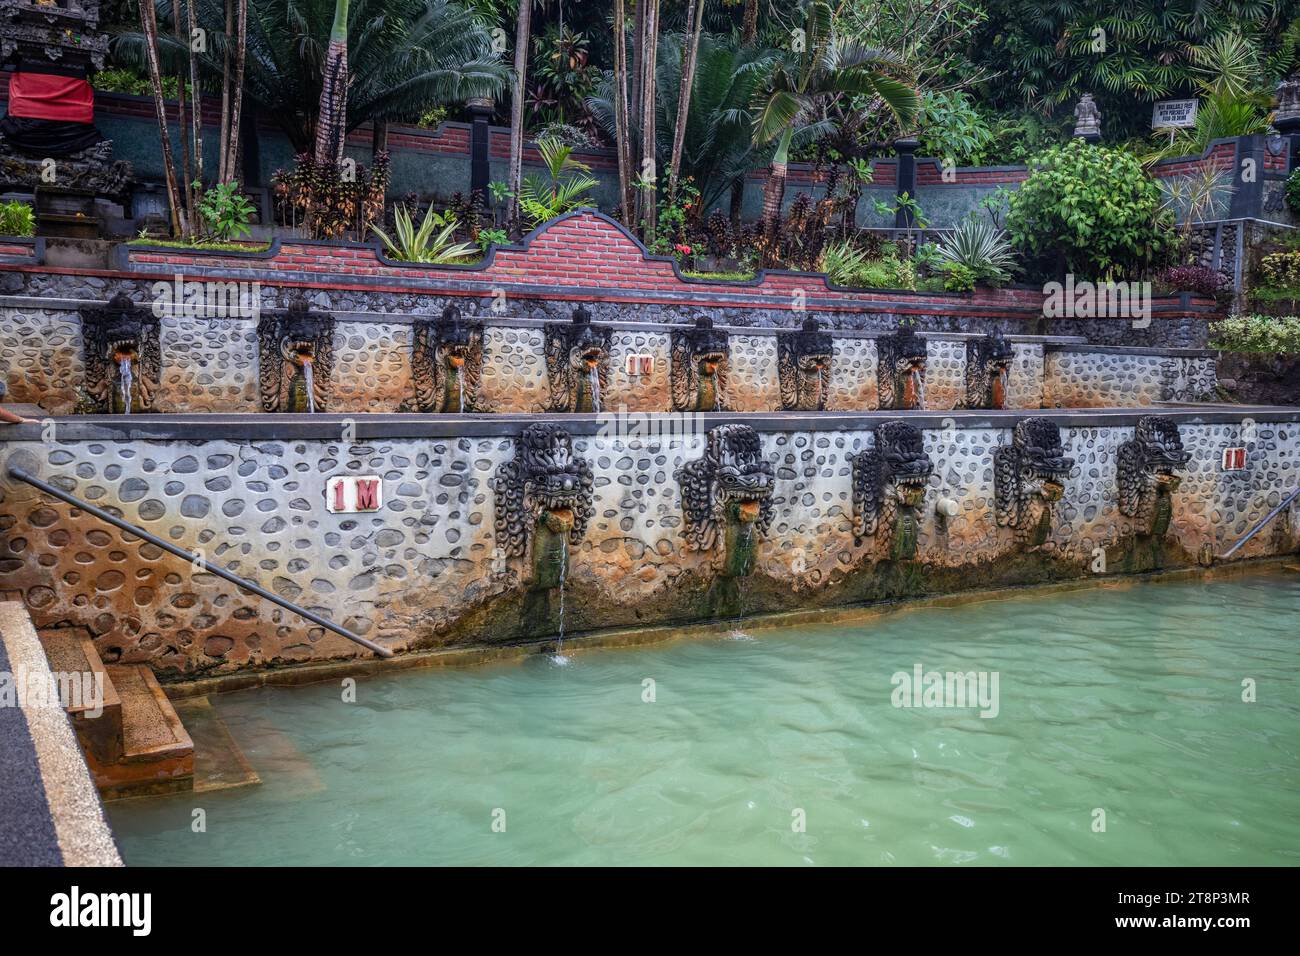 Hot springs, thermal bath in the tropical jungle. Ritual sulphur pool for swimming. Banjar, Bali Stock Photo